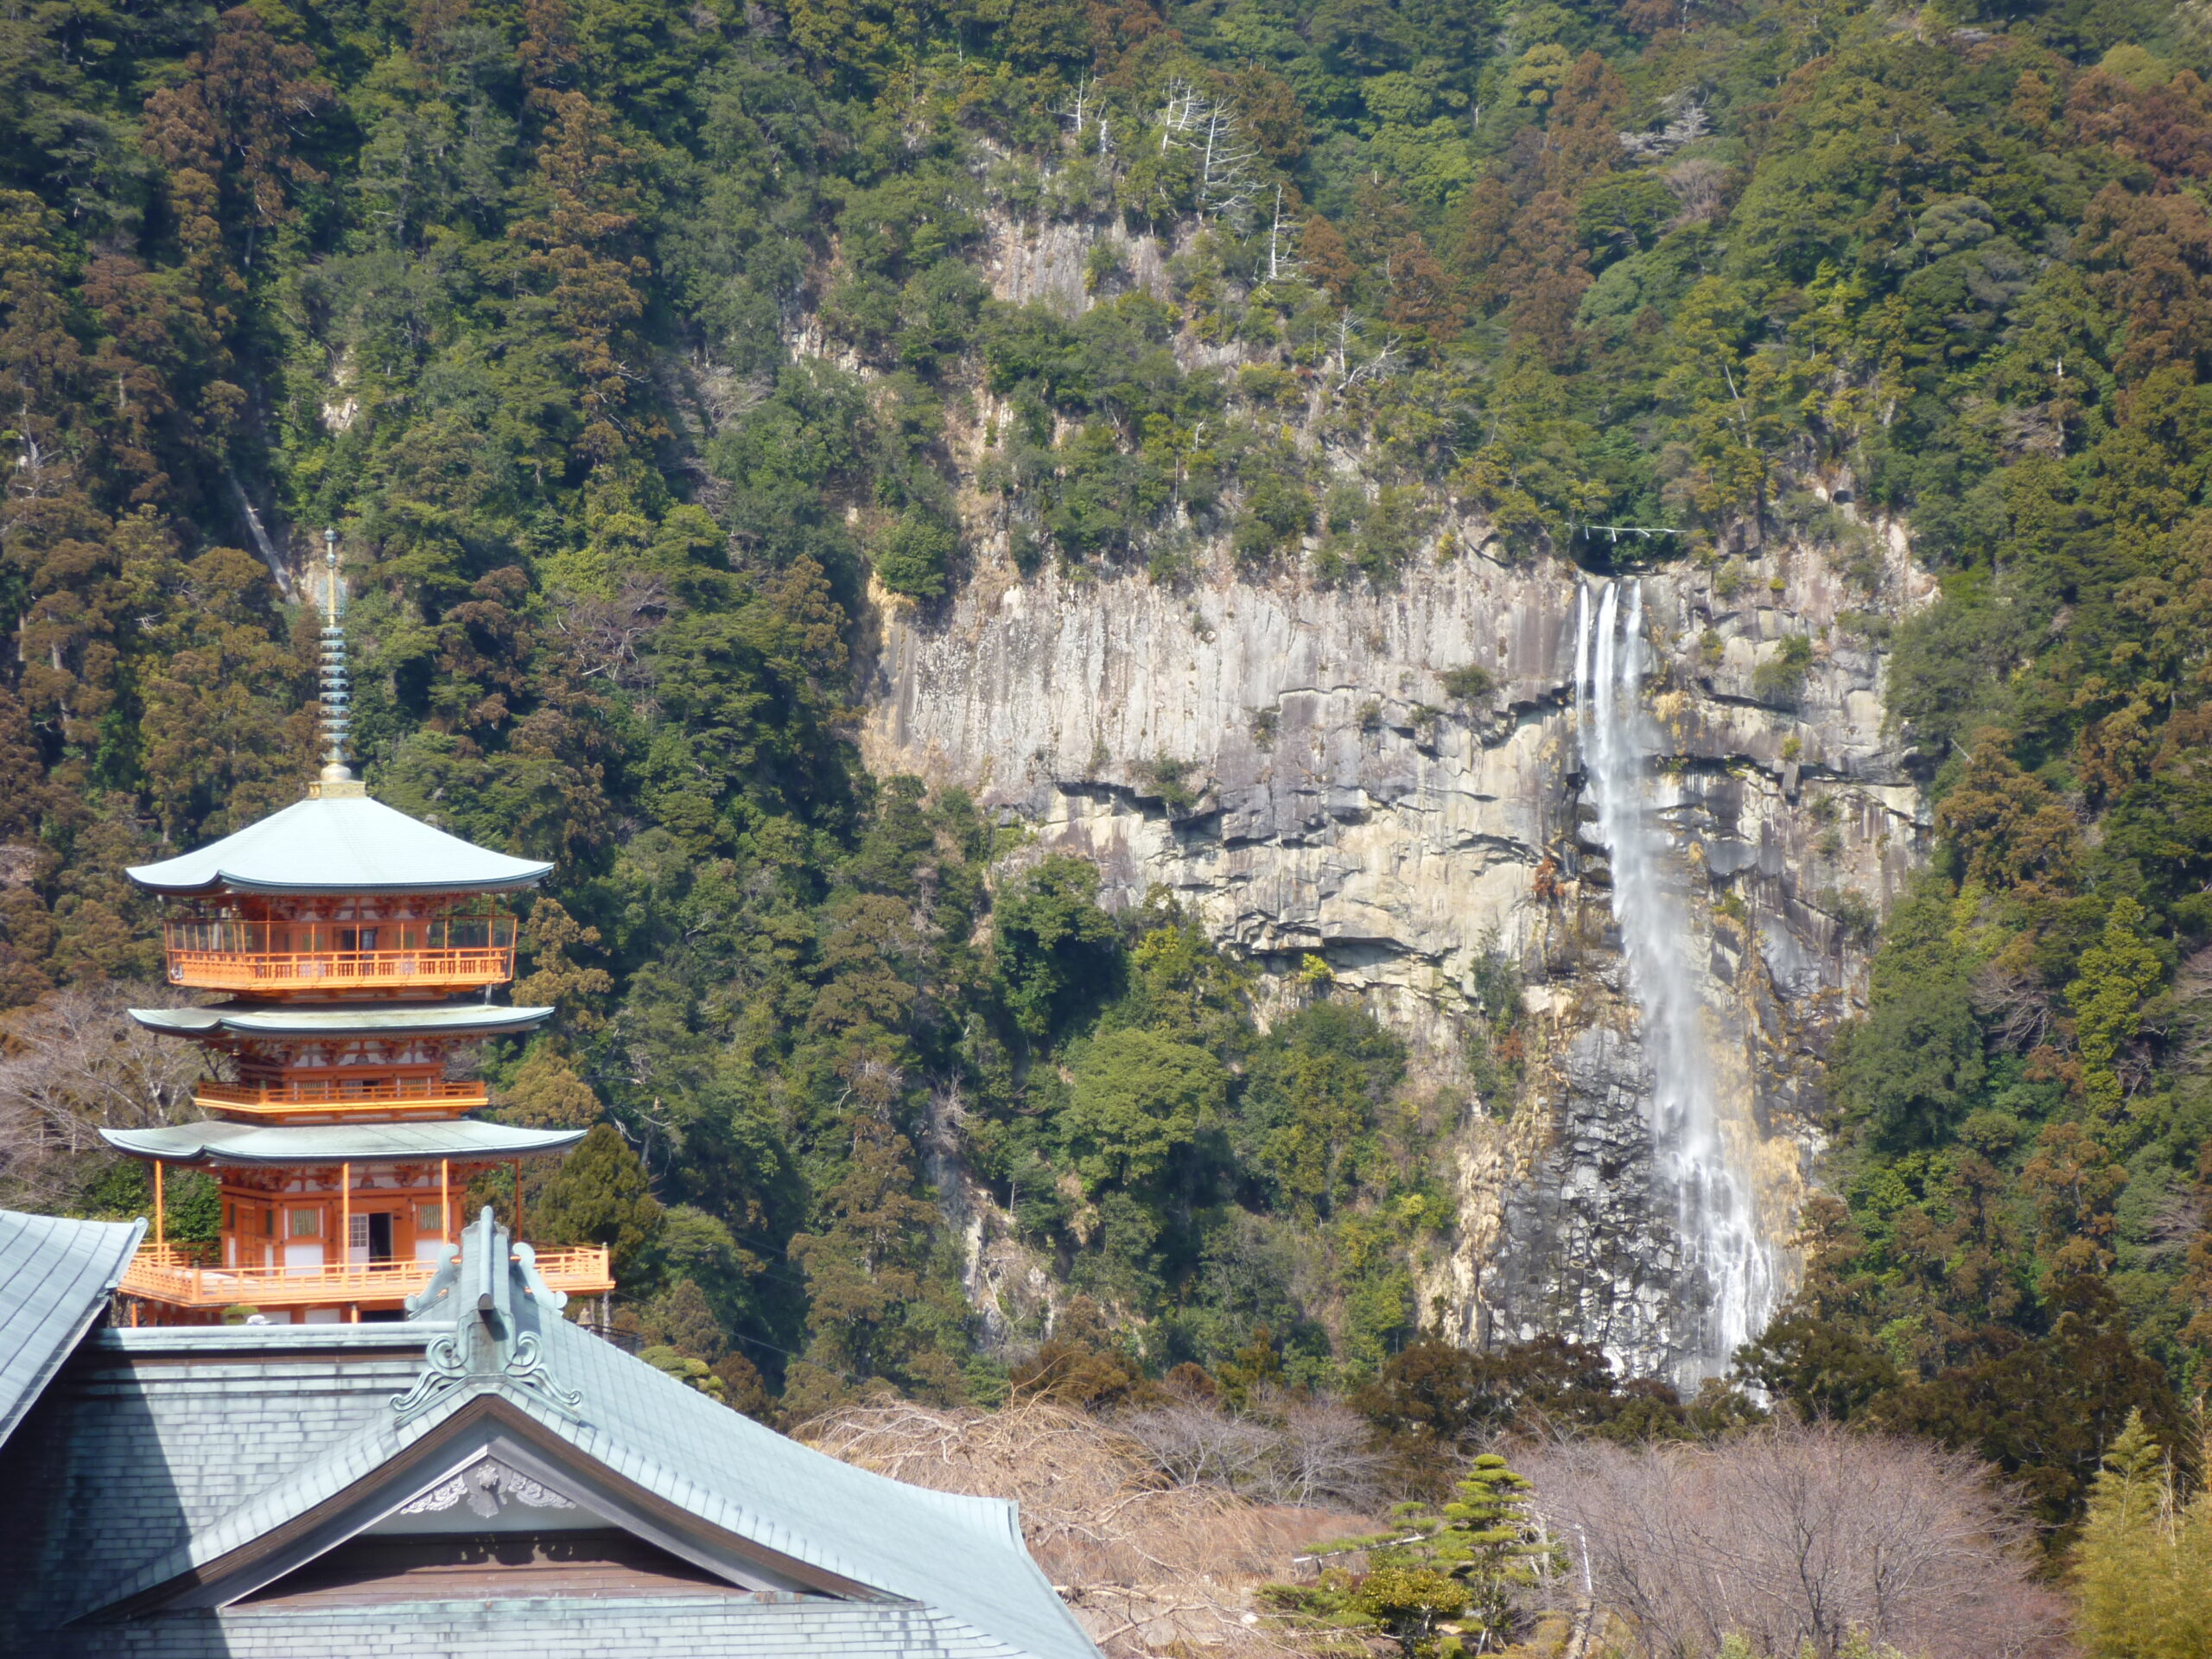 『青岸渡寺』境内の三重塔と那智の滝